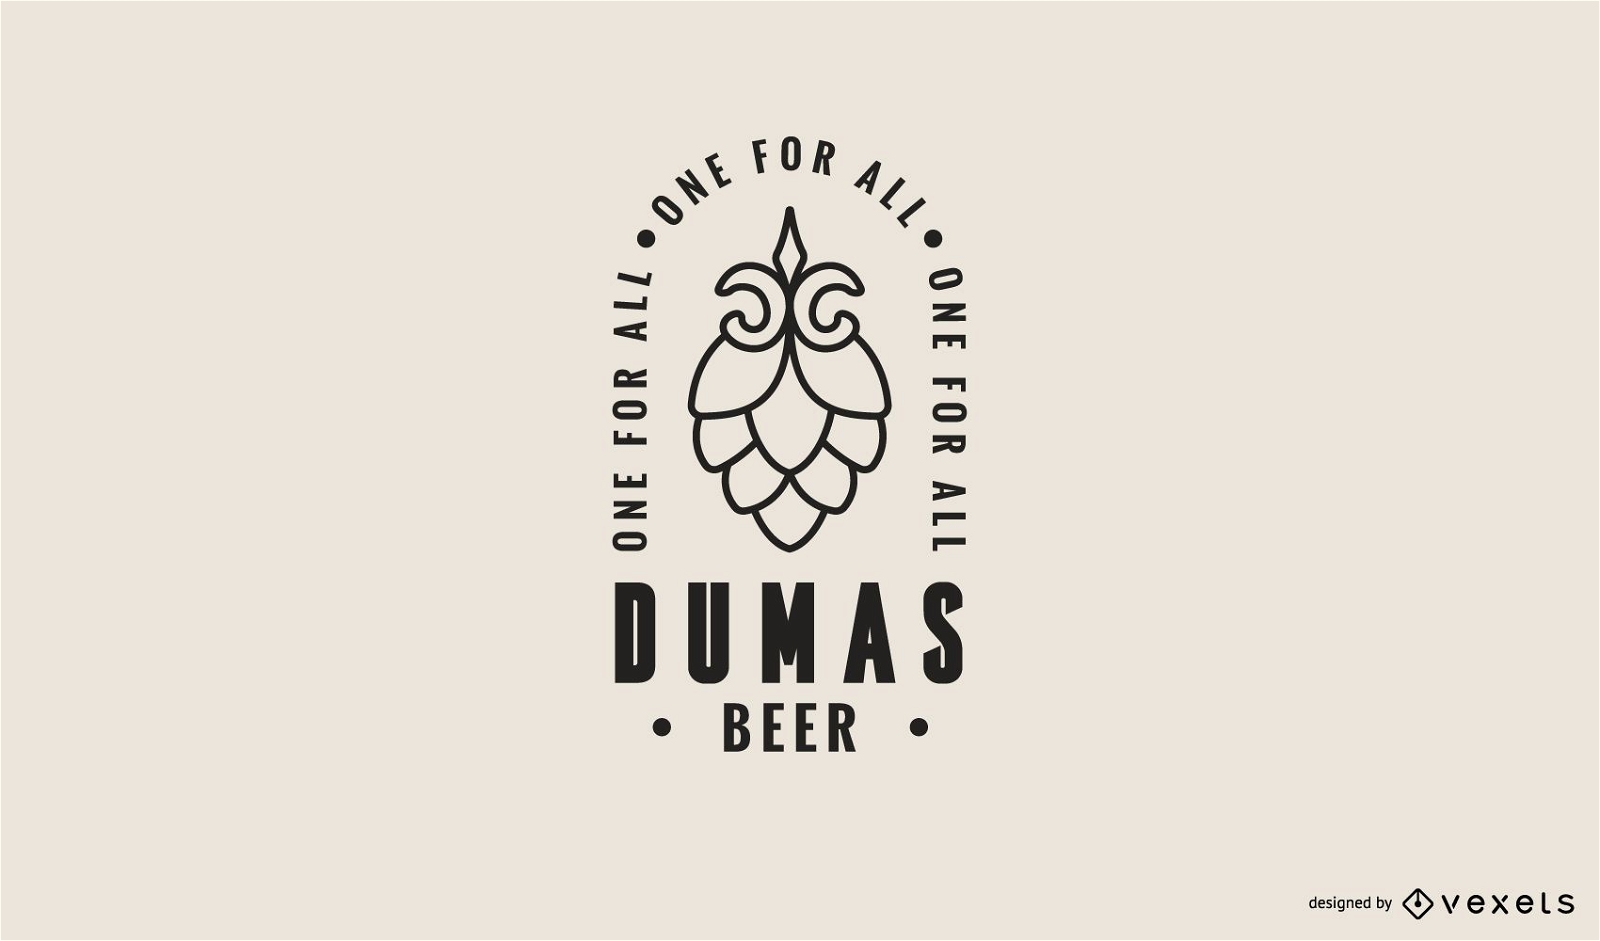 Plantilla de logotipo de cerveza dumas